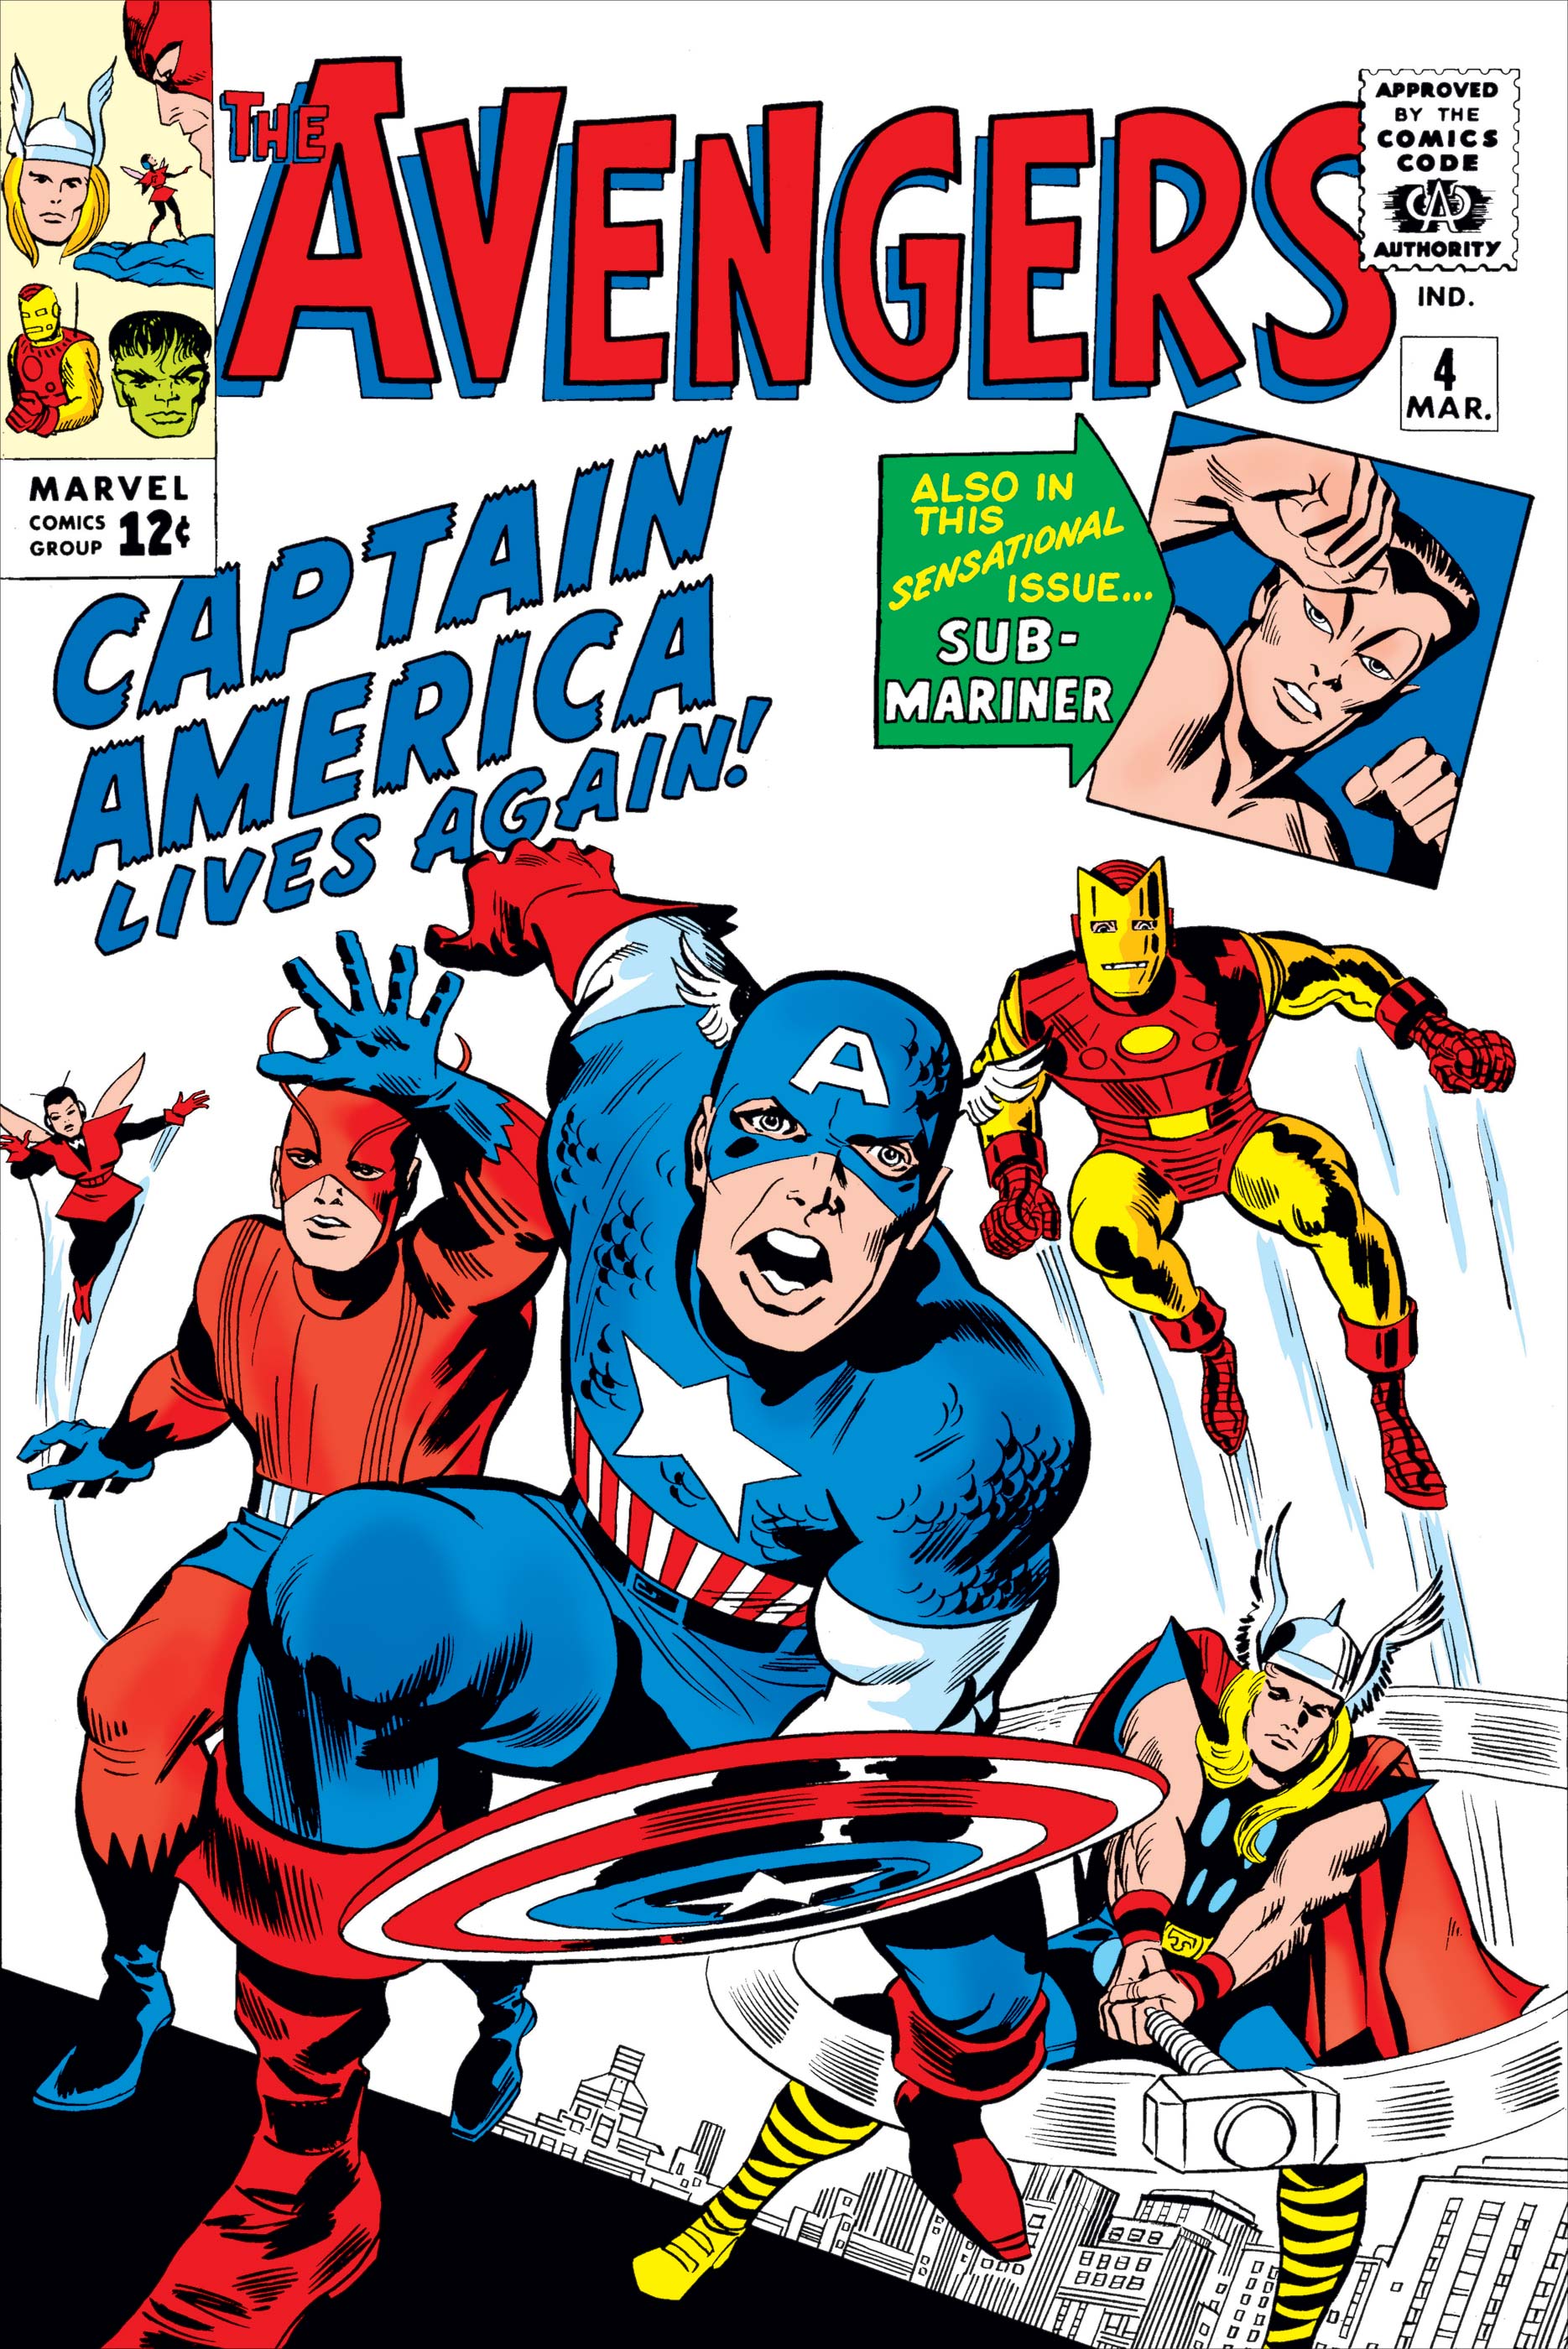 Avengers (1963) #4 | Comic Issues | Marvel